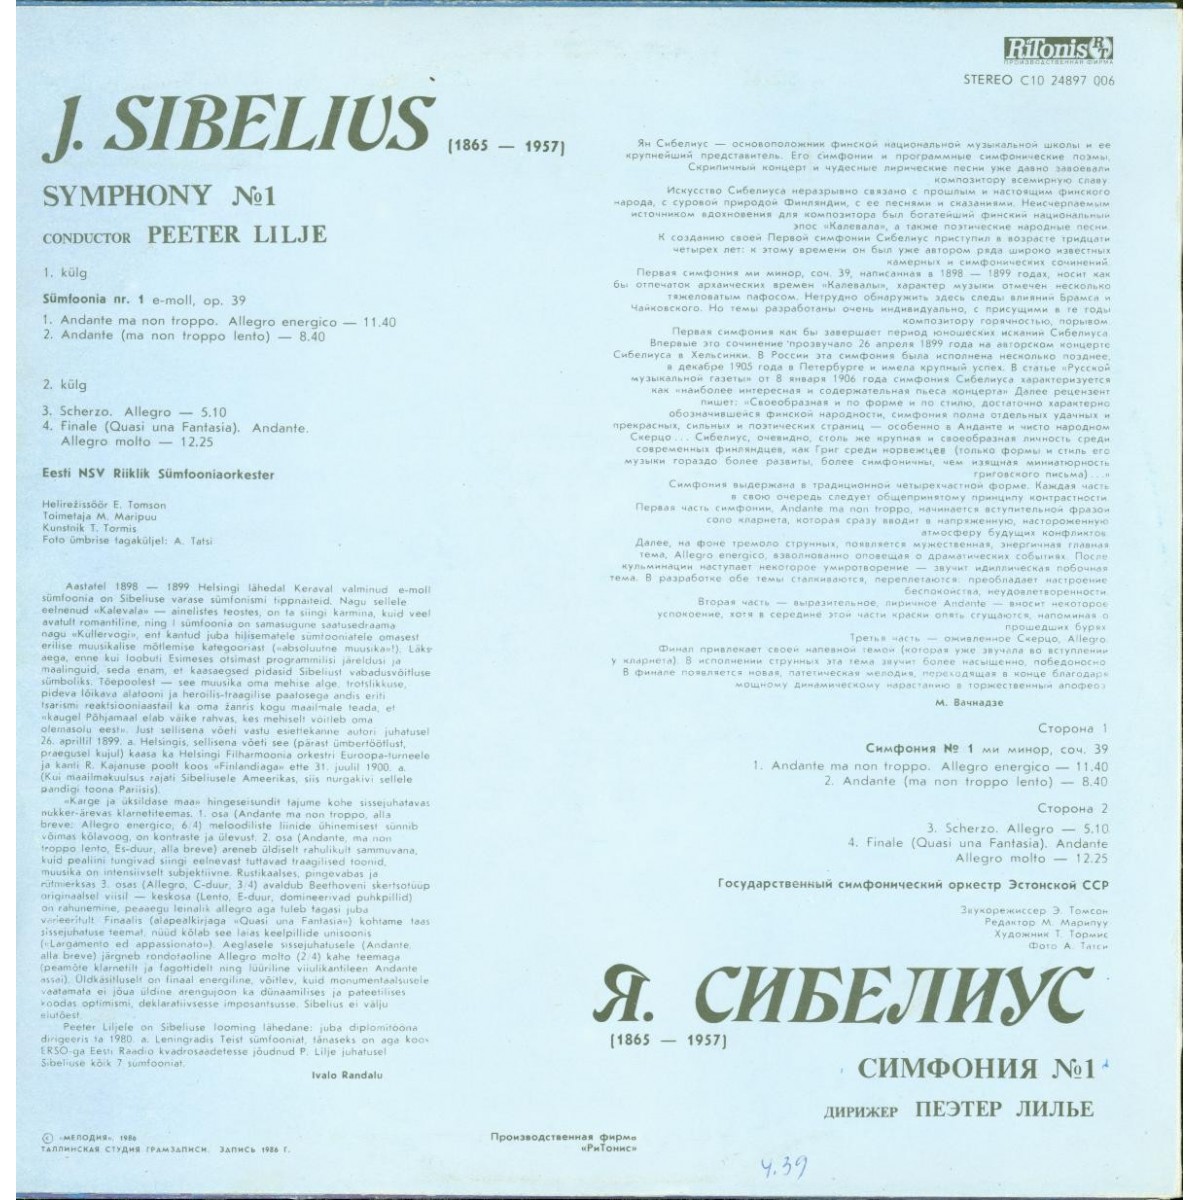 Я. СИБЕЛИУС (1865-1957): Симфония № 1 ми минор, соч. 39